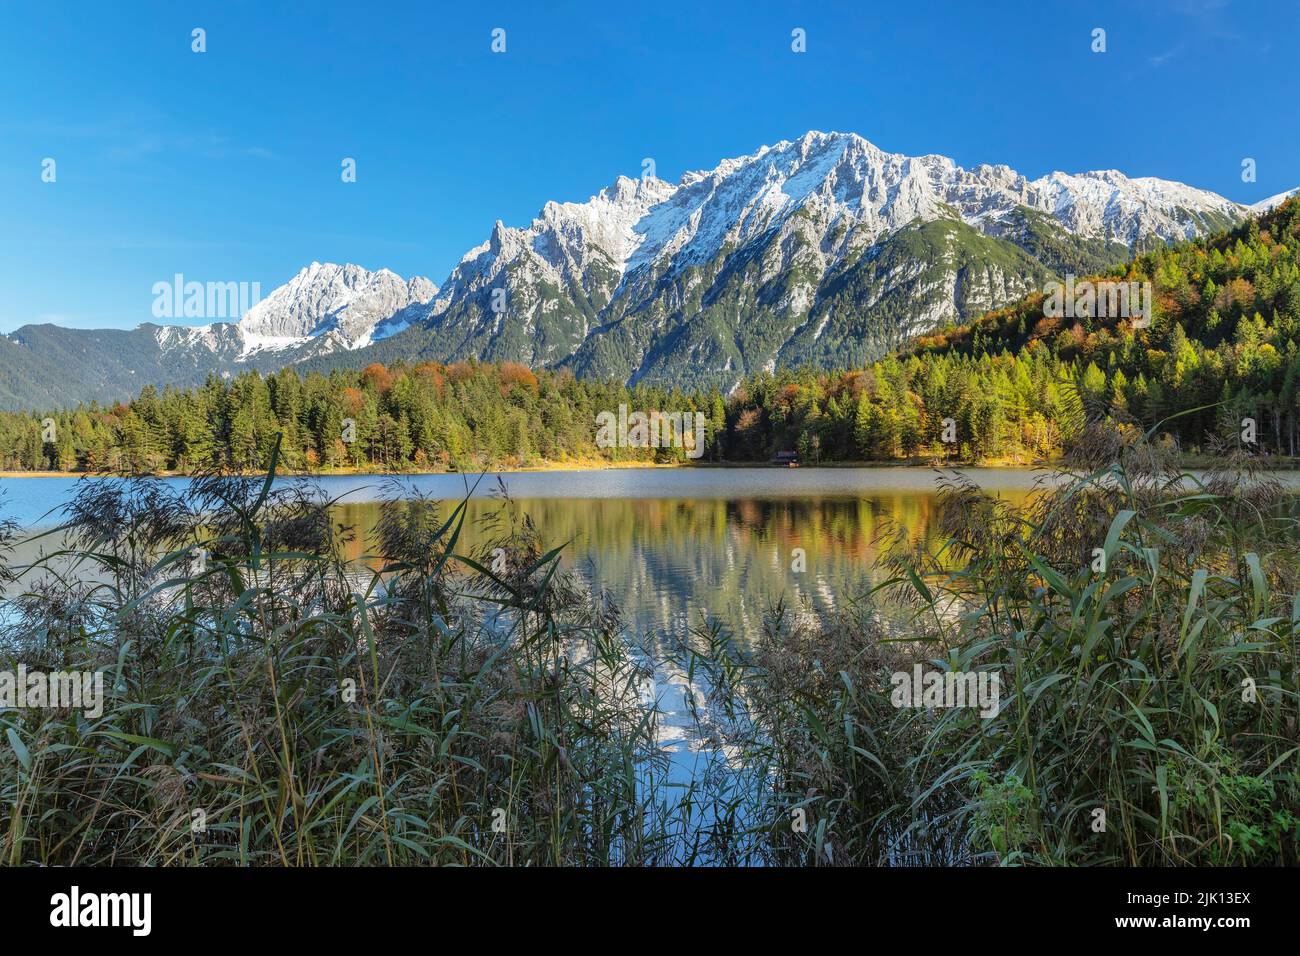 La catena montuosa del Karwendel si riflette nel lago di Ferchensee, nel Werdenfelser Land, nell'alta Baviera, in Germania, in Europa Foto Stock